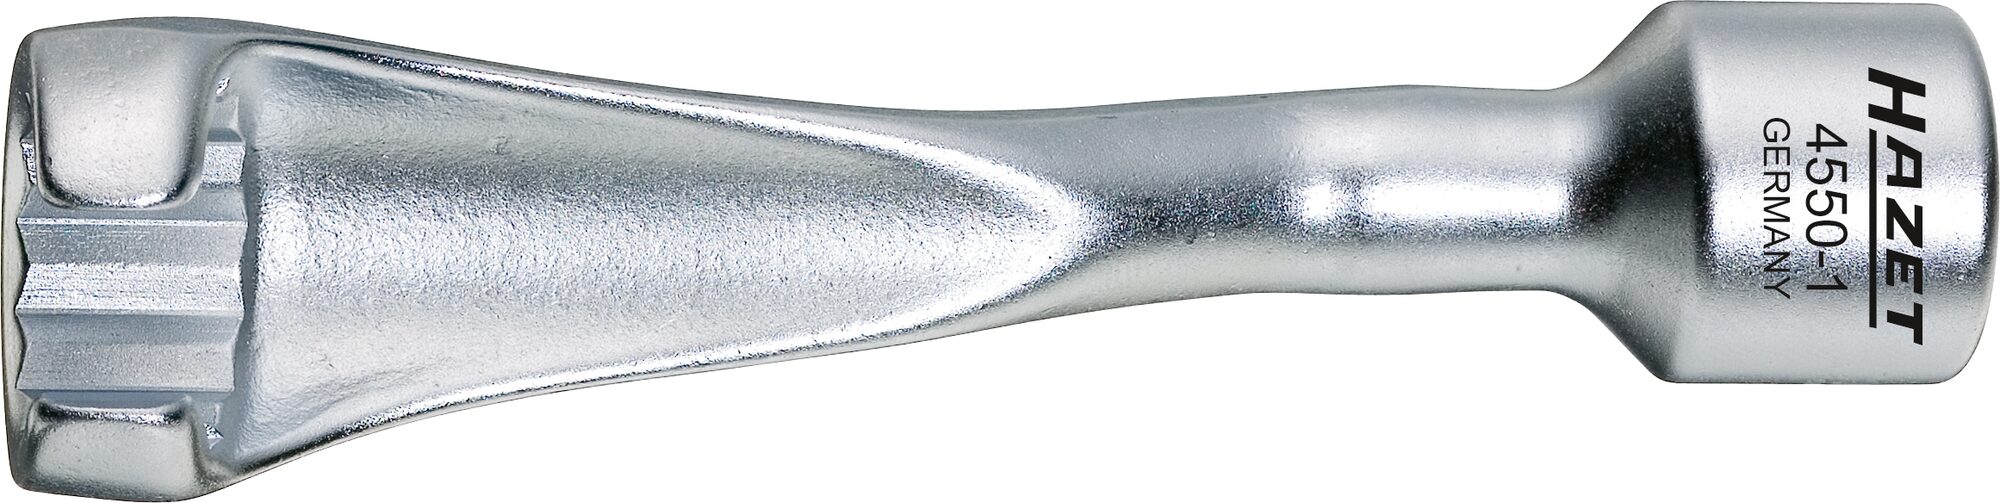 HAZET Einspritzleitungs-Schlüssel 4550-1 ∙ Vierkant12,5 mm (1/2 Zoll) ∙ Außen-Doppel-Sechskant Profil ∙ 17 mm